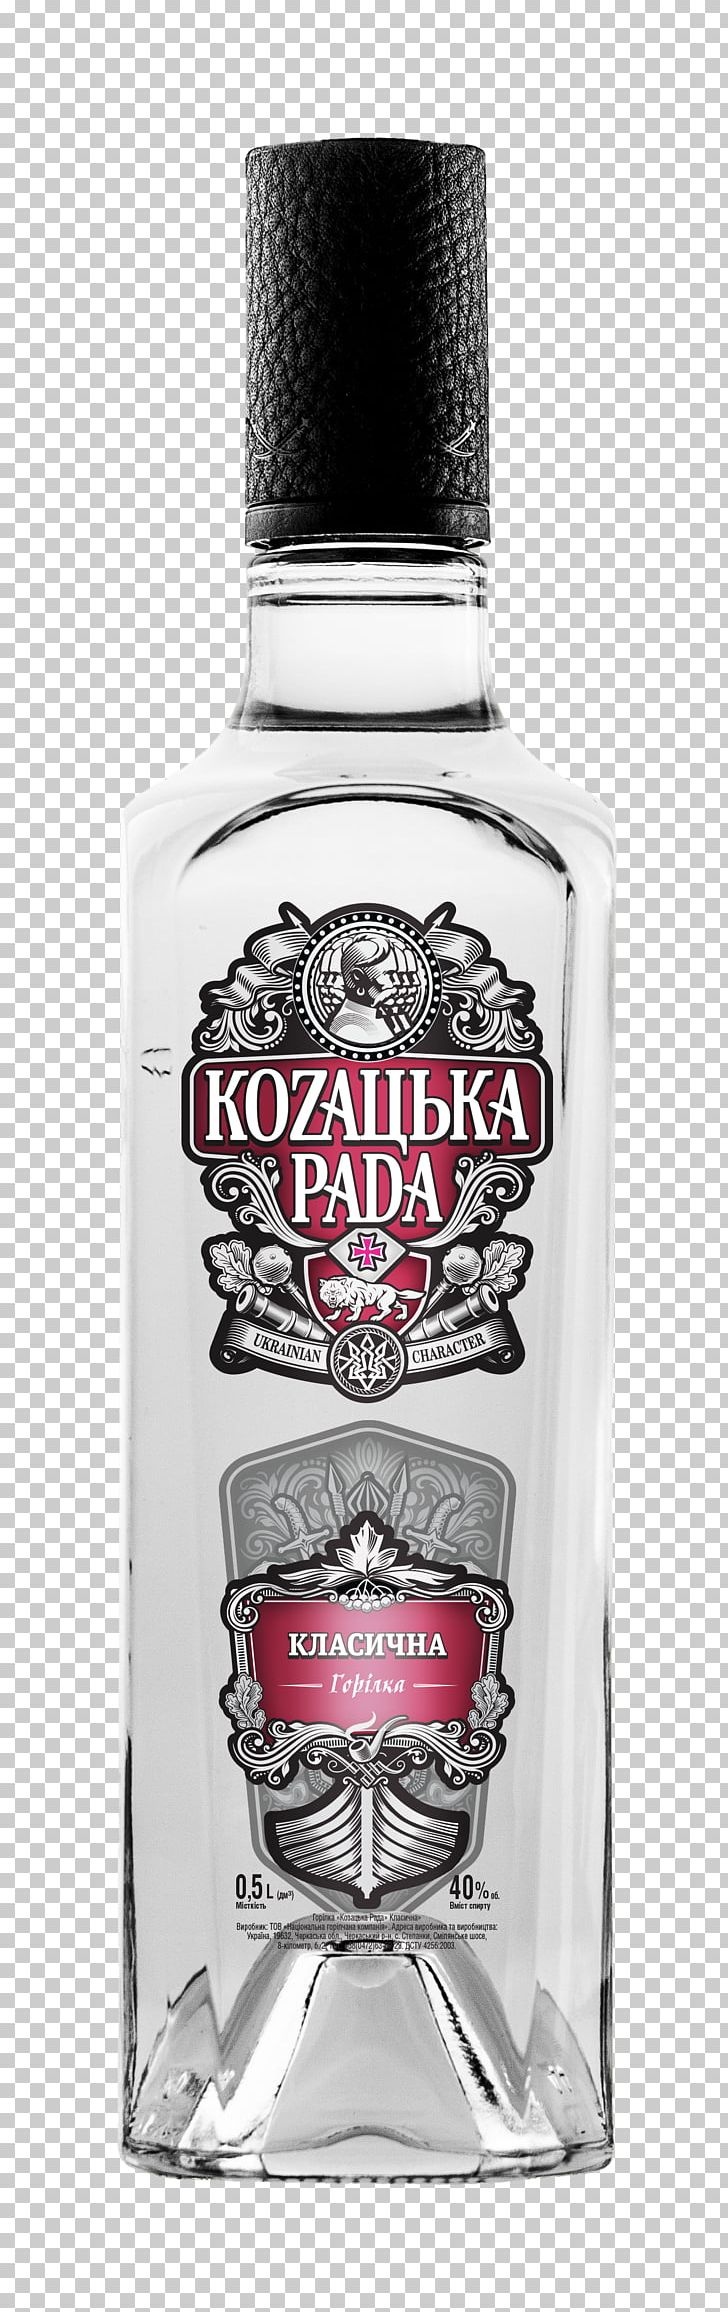 Vodka Liqueur Cossack Rada Alcoholic Drink PNG, Clipart, Alcoholic Beverage, Alcoholic Drink, Bottle, Cossack, Distilled Beverage Free PNG Download